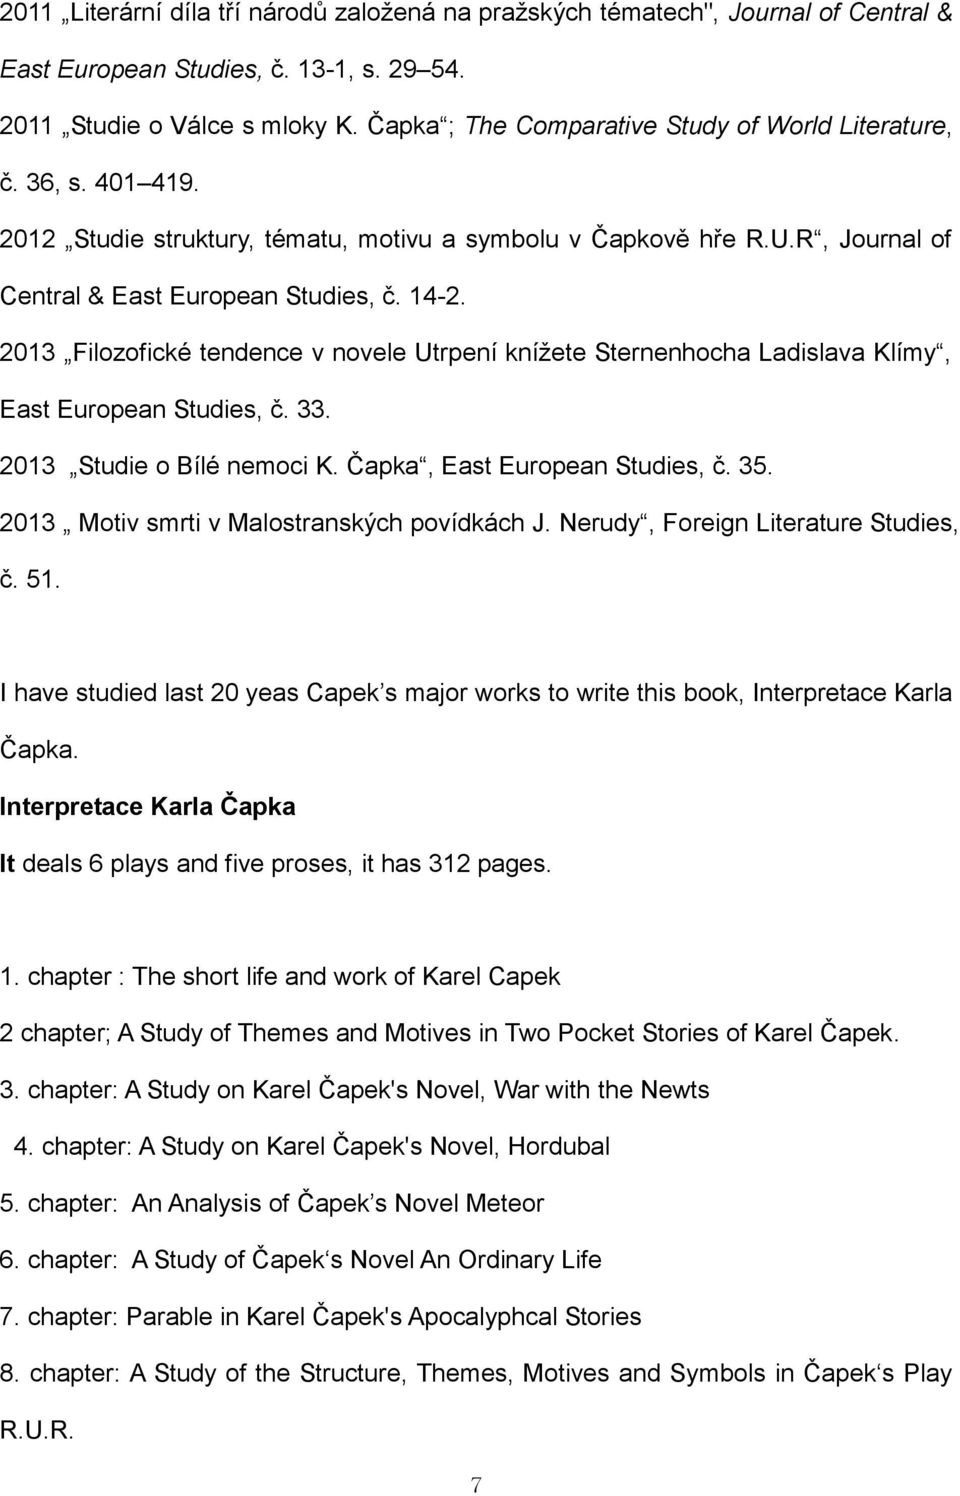 Česká literatura a Karel Čapek v Jižní Koreji - PDF Free Download